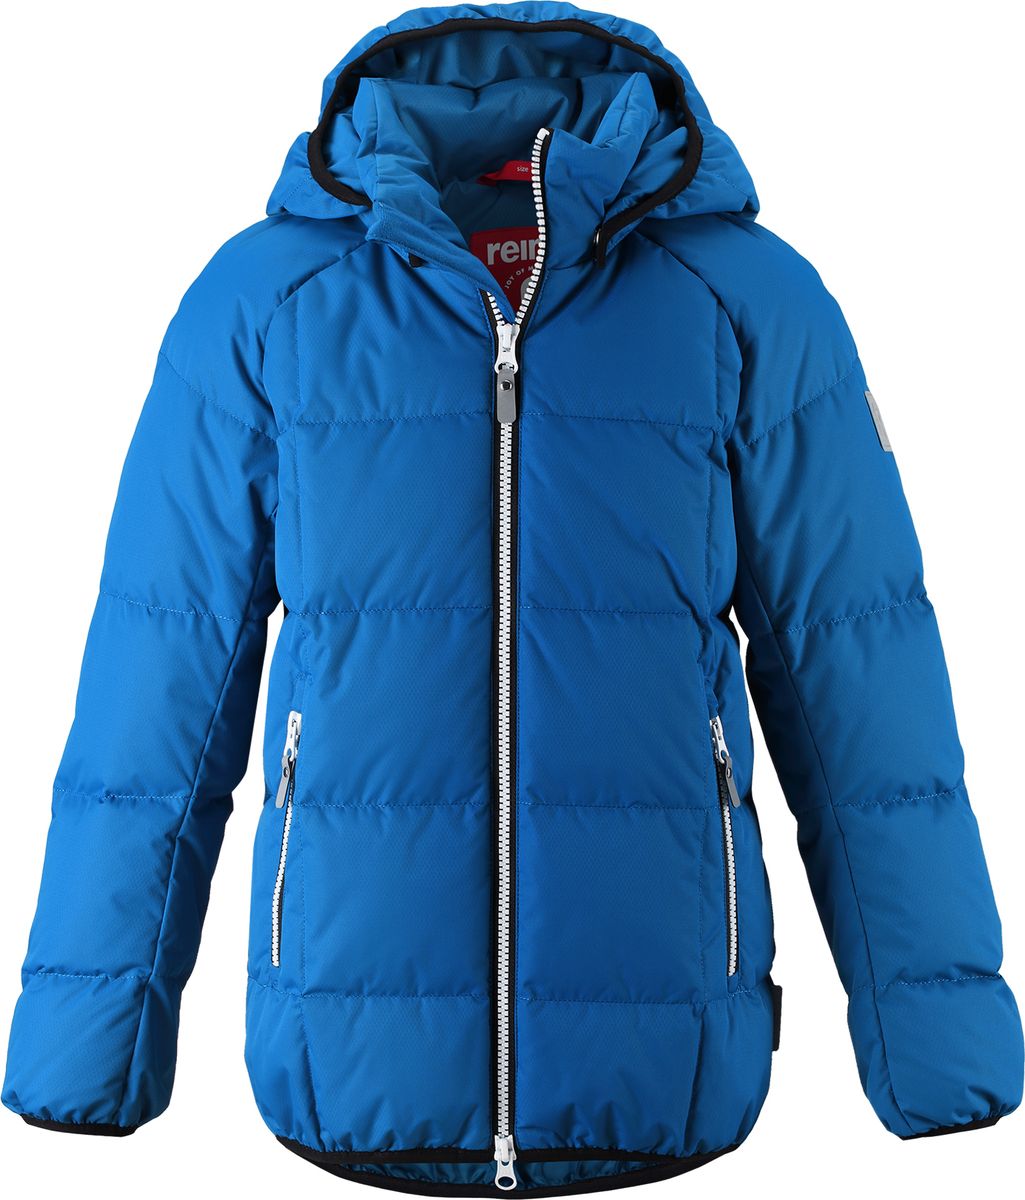 Куртка для мальчика Reima Jord, цвет: синий. 5313596680. Размер 146